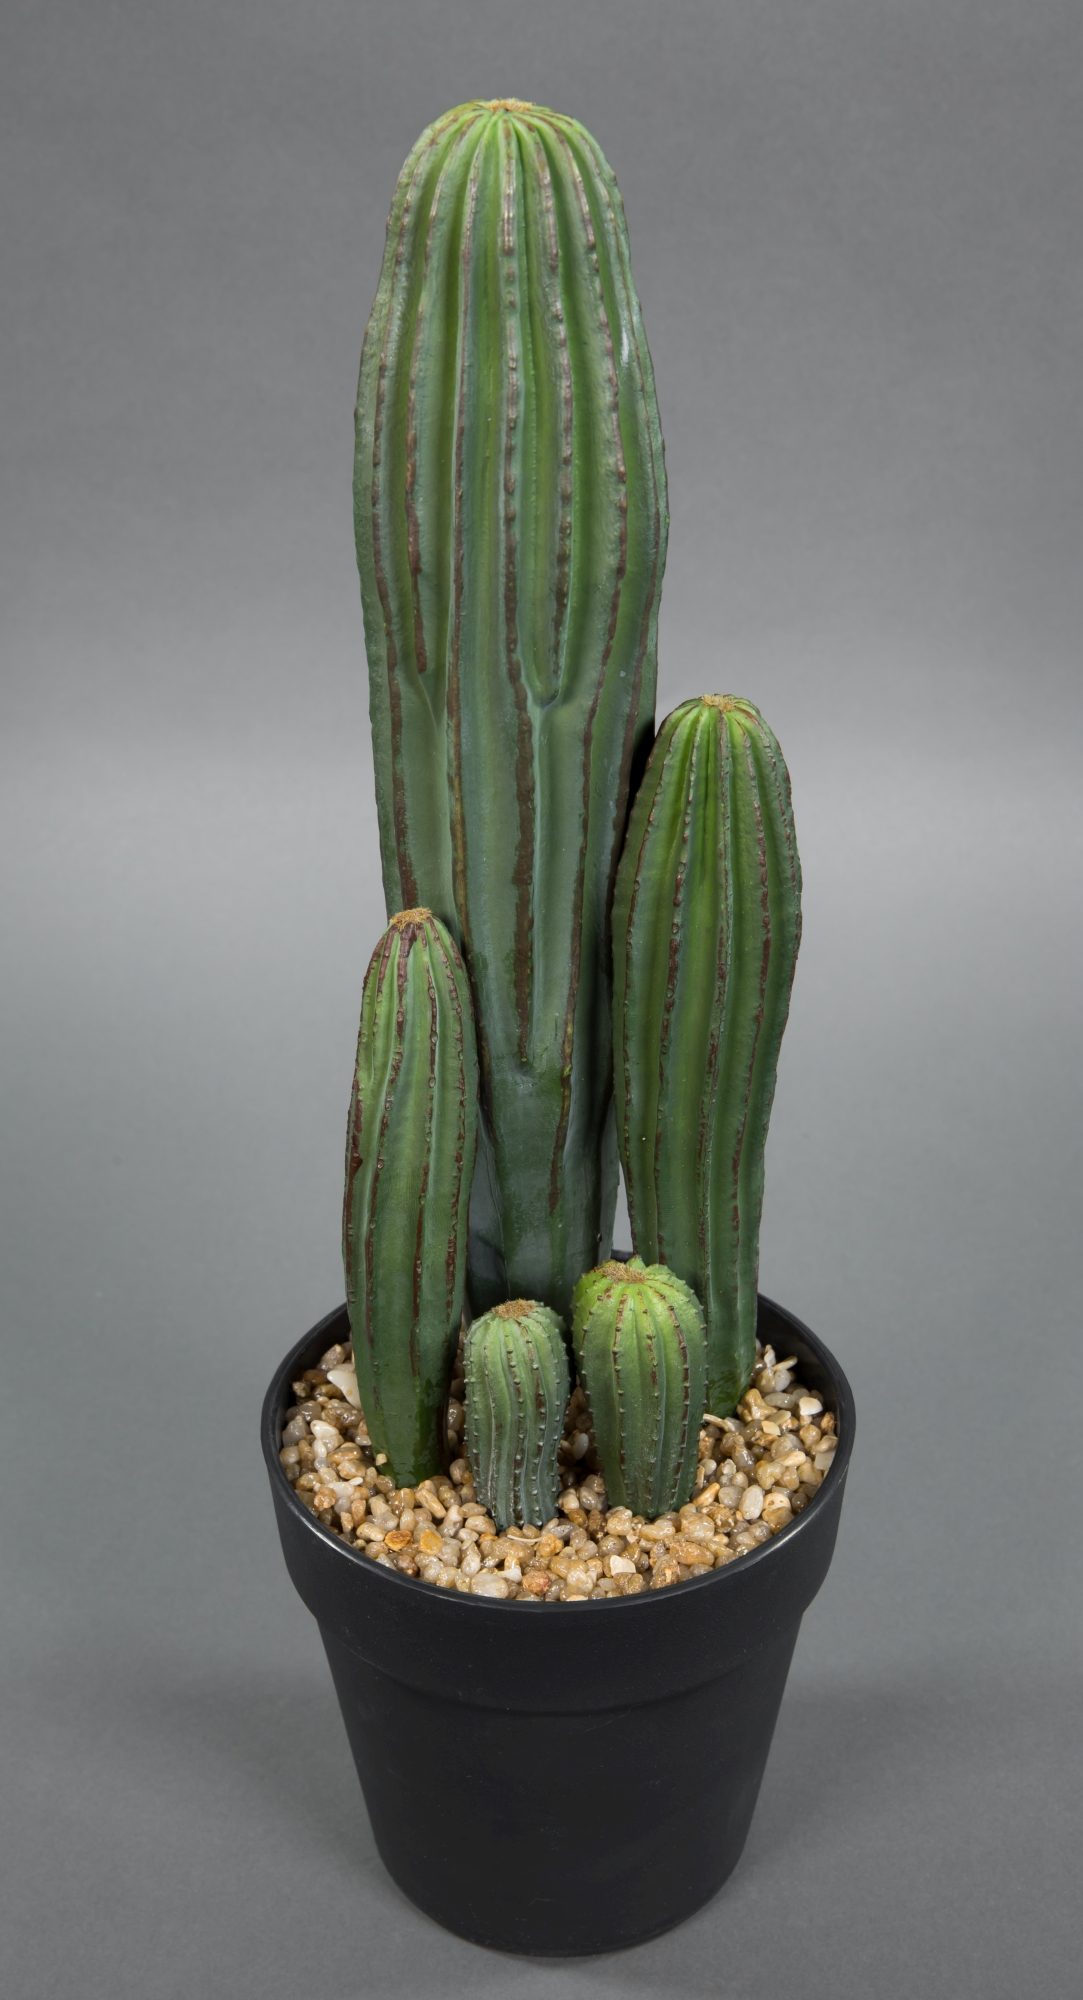 https://www.seidenblumen-ross.de/media/74/49/52/1689064246/saeulenkaktus-28cm-im-topf-dp-kunstpflanzen-kuenstliche-kakteen-pflanzen-kuenstlicher-kaktus.jpg